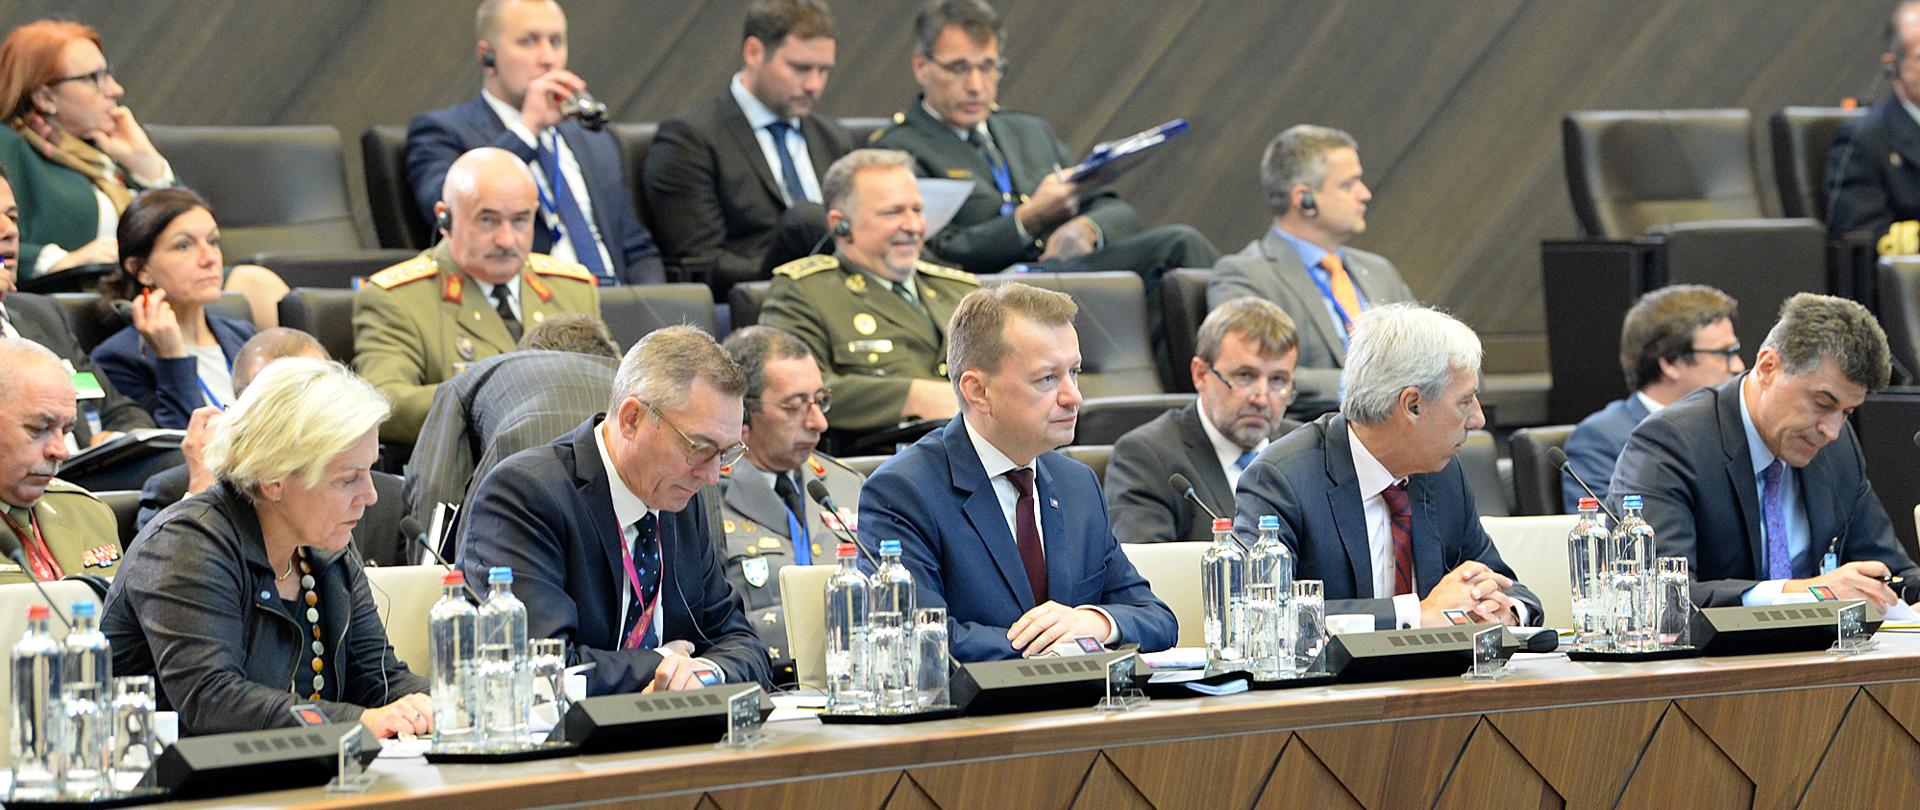 Spotkanie Ministrów Obrony Narodowej krajów NATO, Bruksela, 25 października 2019